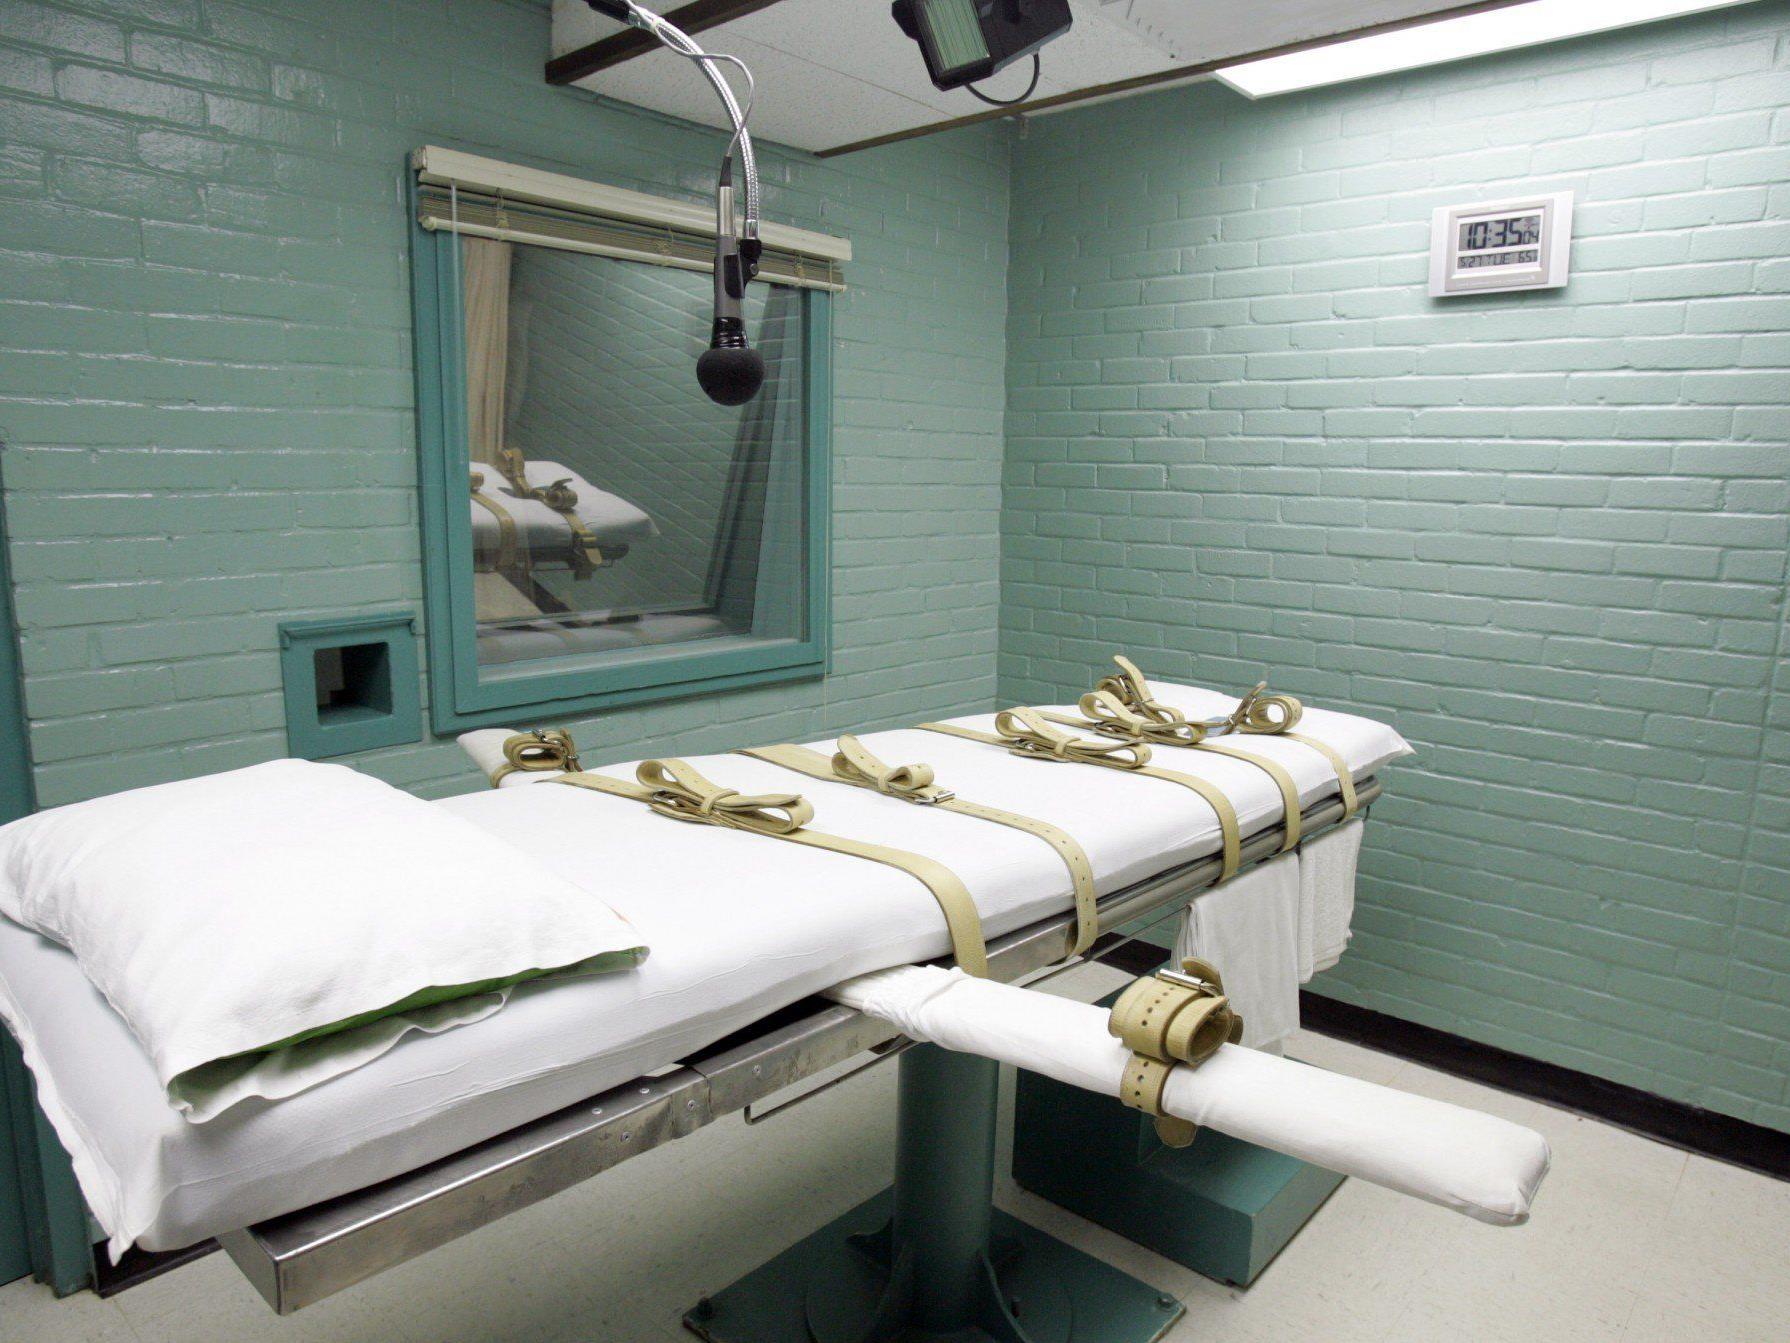 Nach qualvollem Tod von Mann in Oklahoma: US-Todeskandidat verlangt Aufzeichnung seiner Hinrichtung